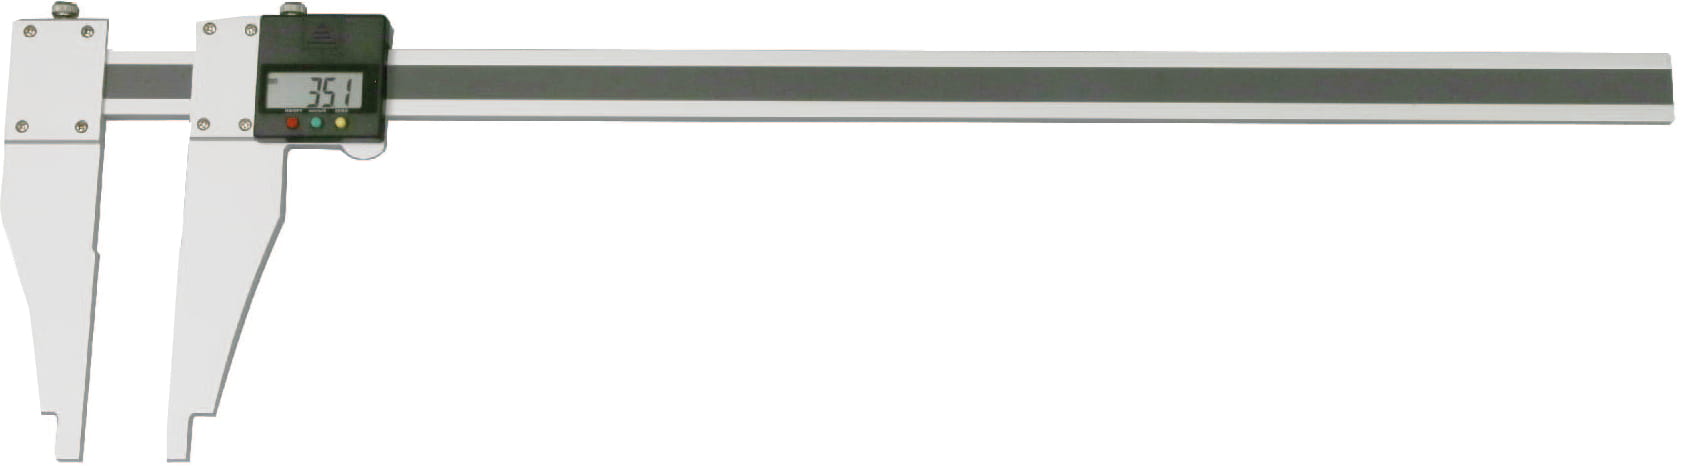 Digital-Werkstatt-Messschieber aus Aluminium, mit verschiebbarem Schnabel